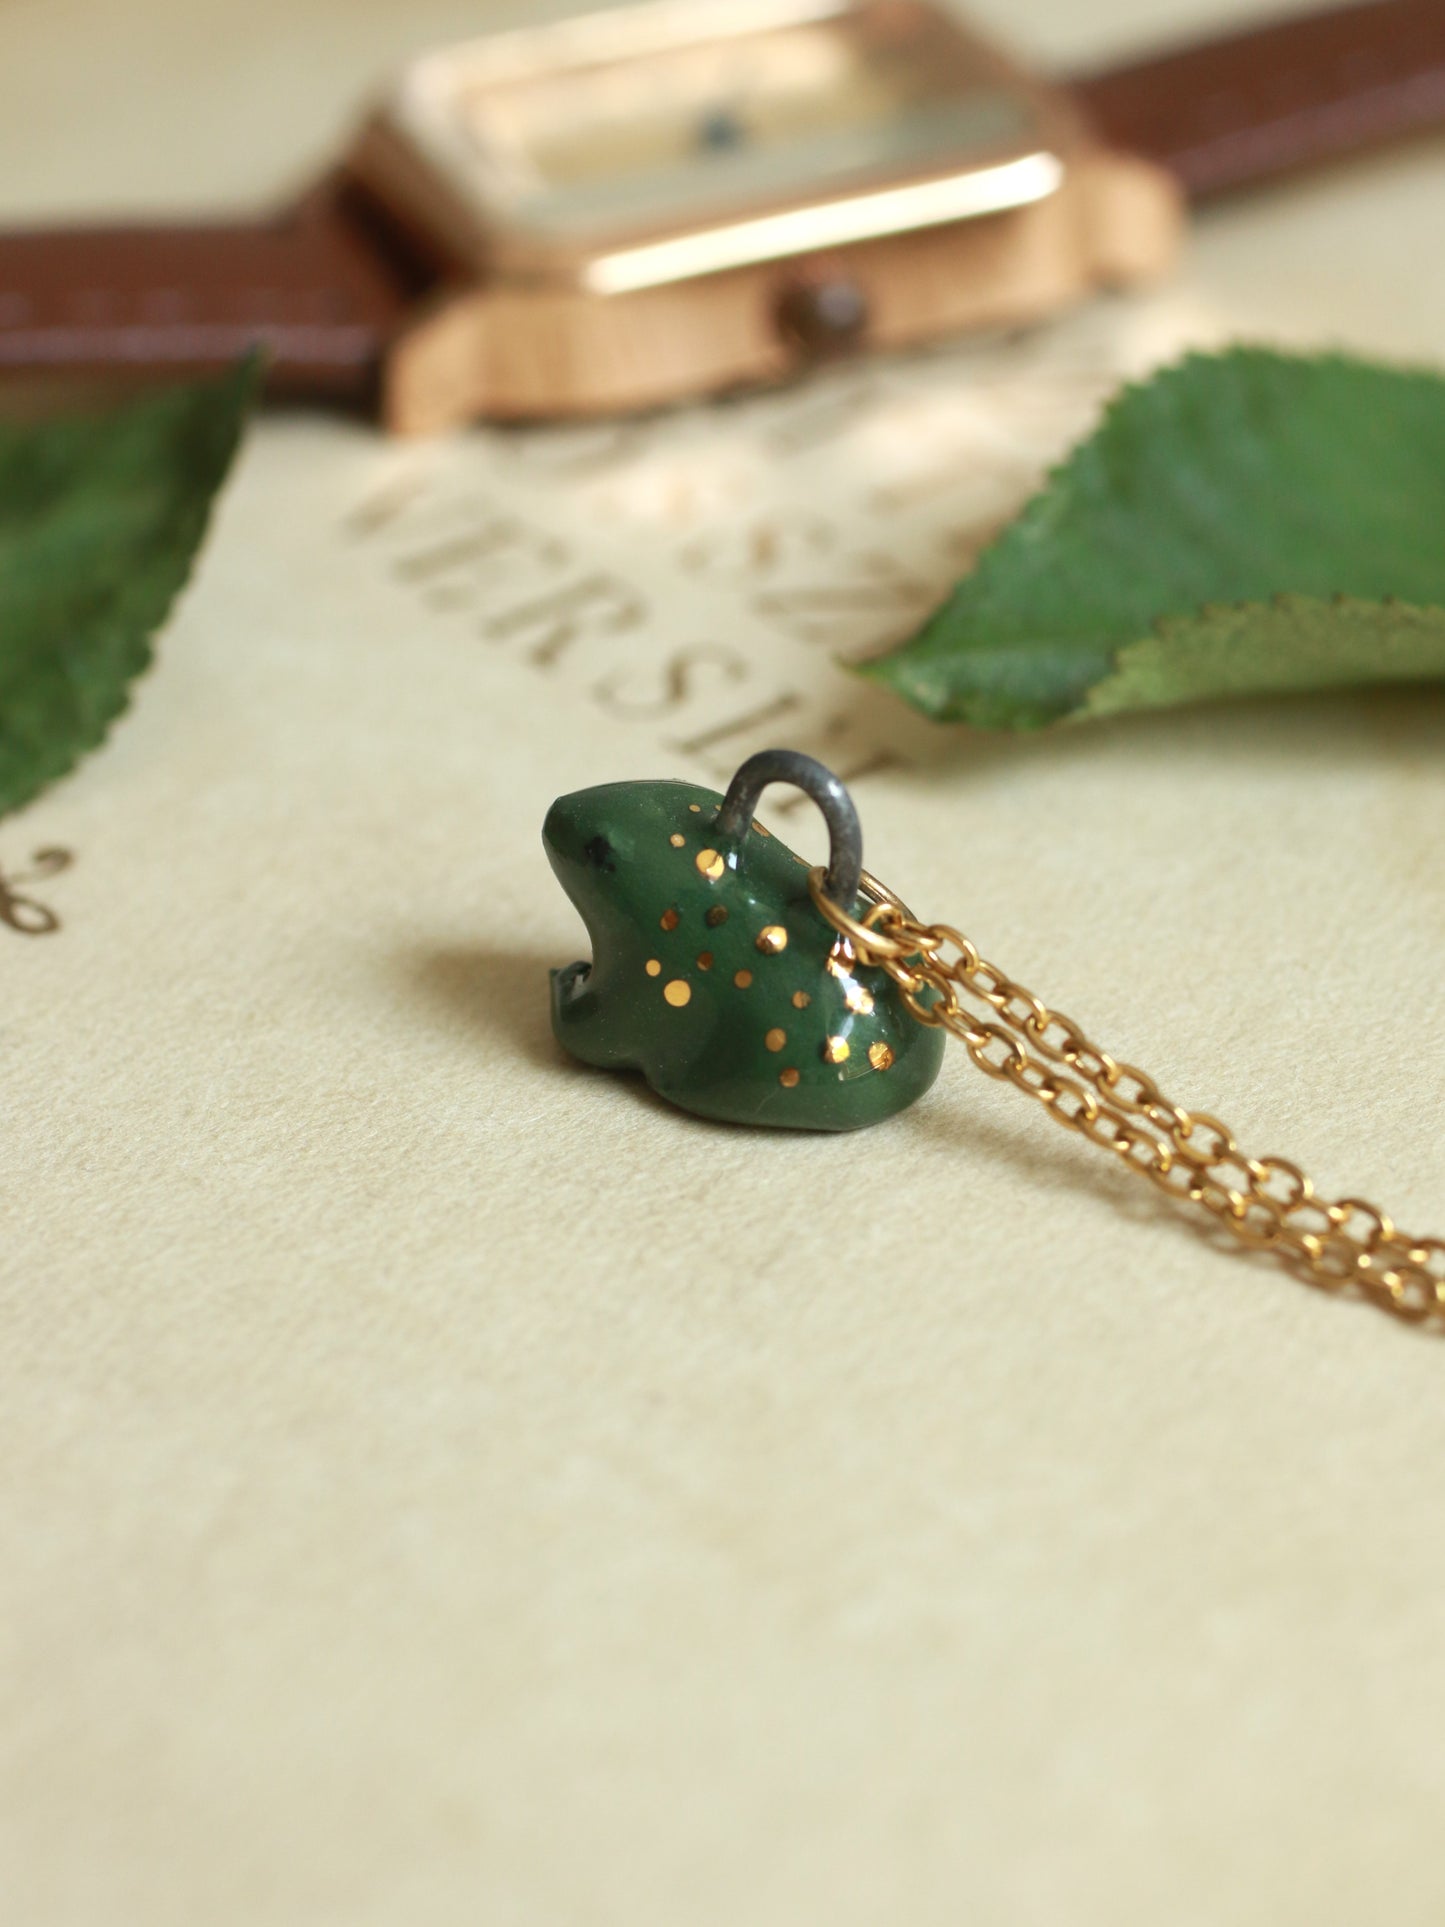 Ceramic Frog necklace - 22k gold details